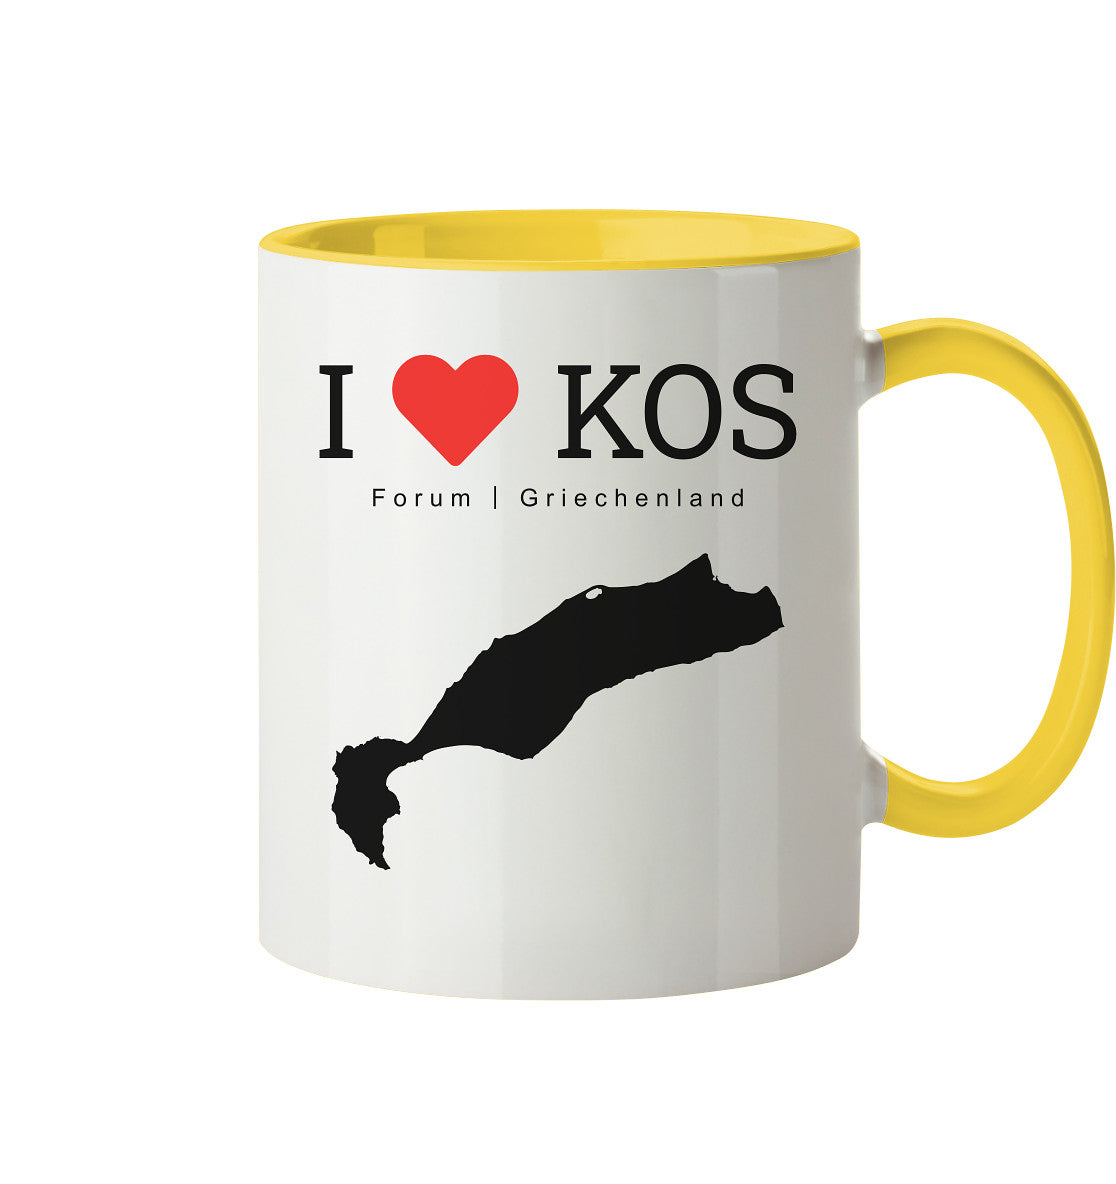 I LOVE KOS - Forum Griechenland Black - Tasse zweifarbig